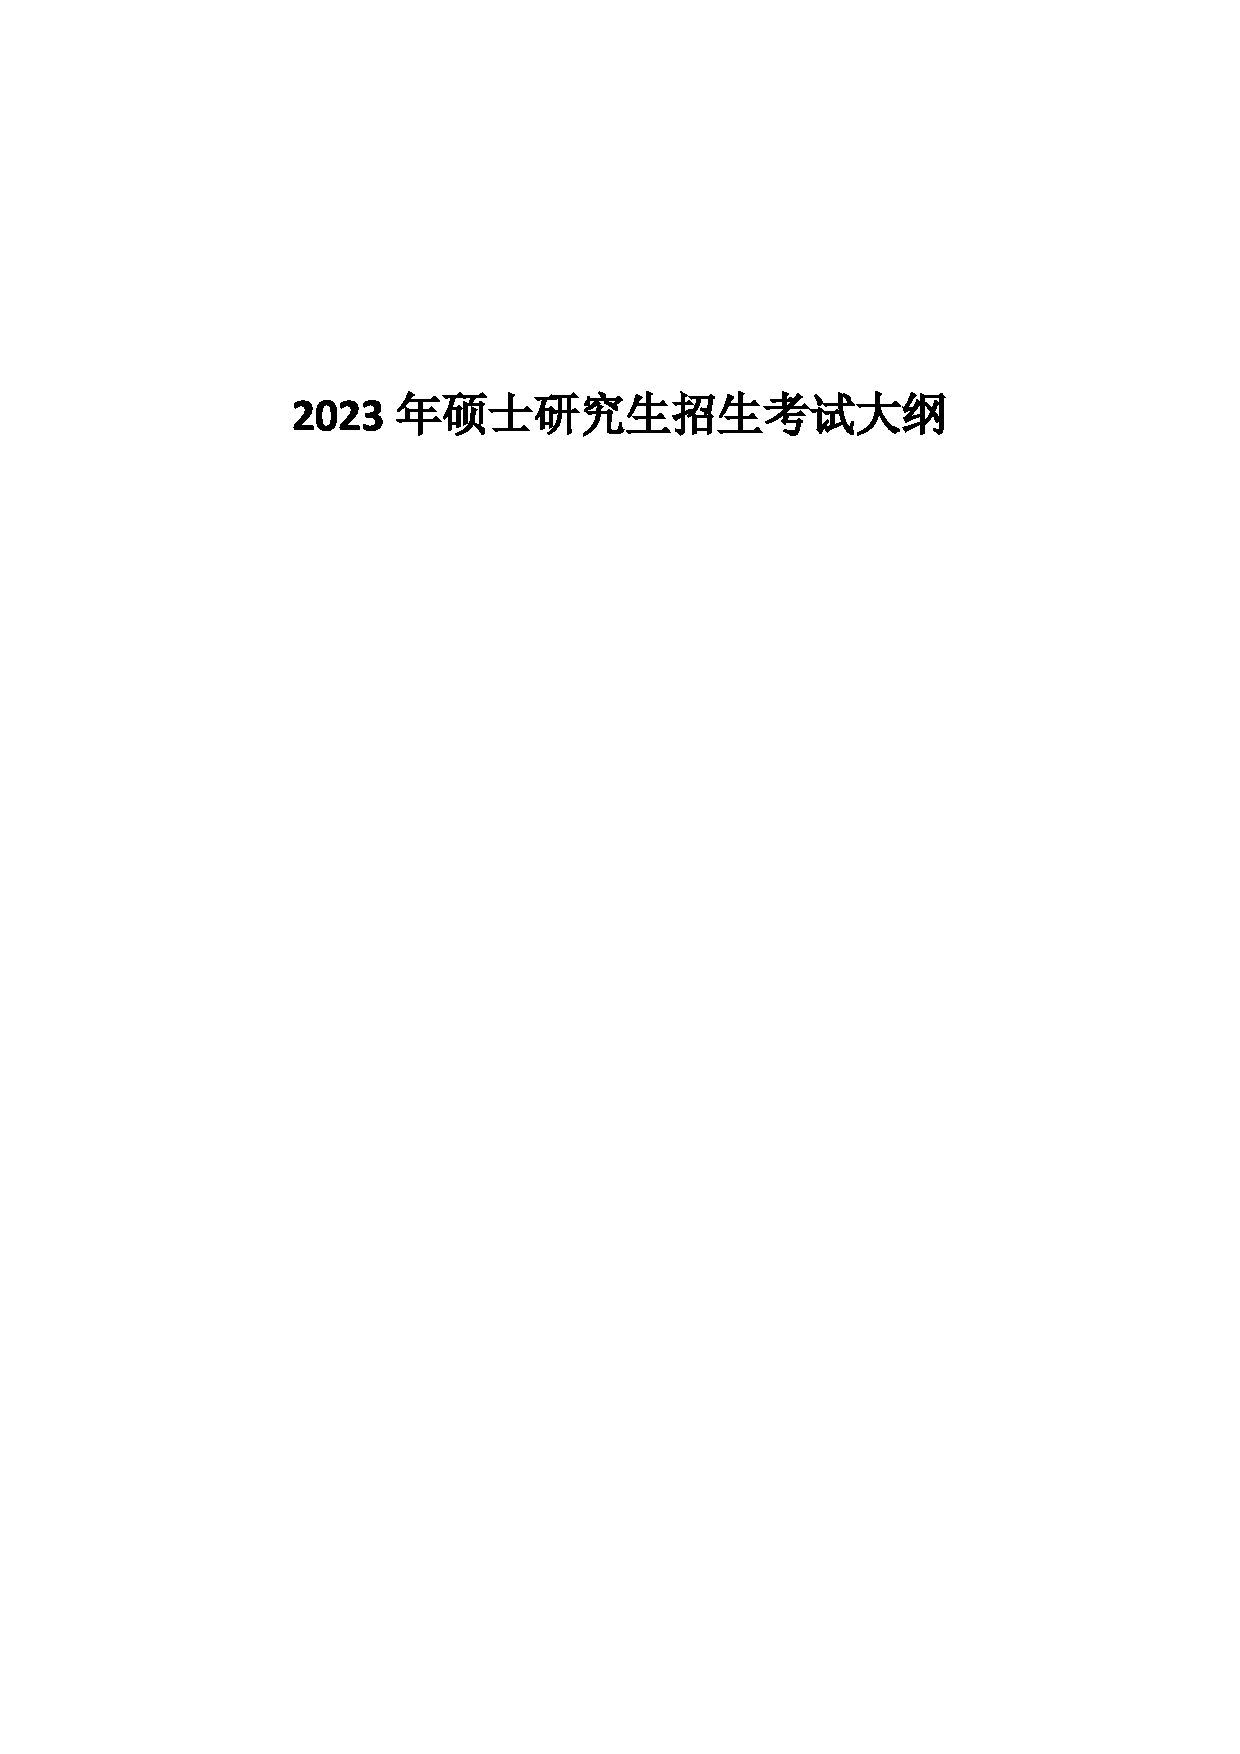 2023考研大纲：中国海洋大学2023年考研 015 文学与新闻传播学院 考试大纲第1页